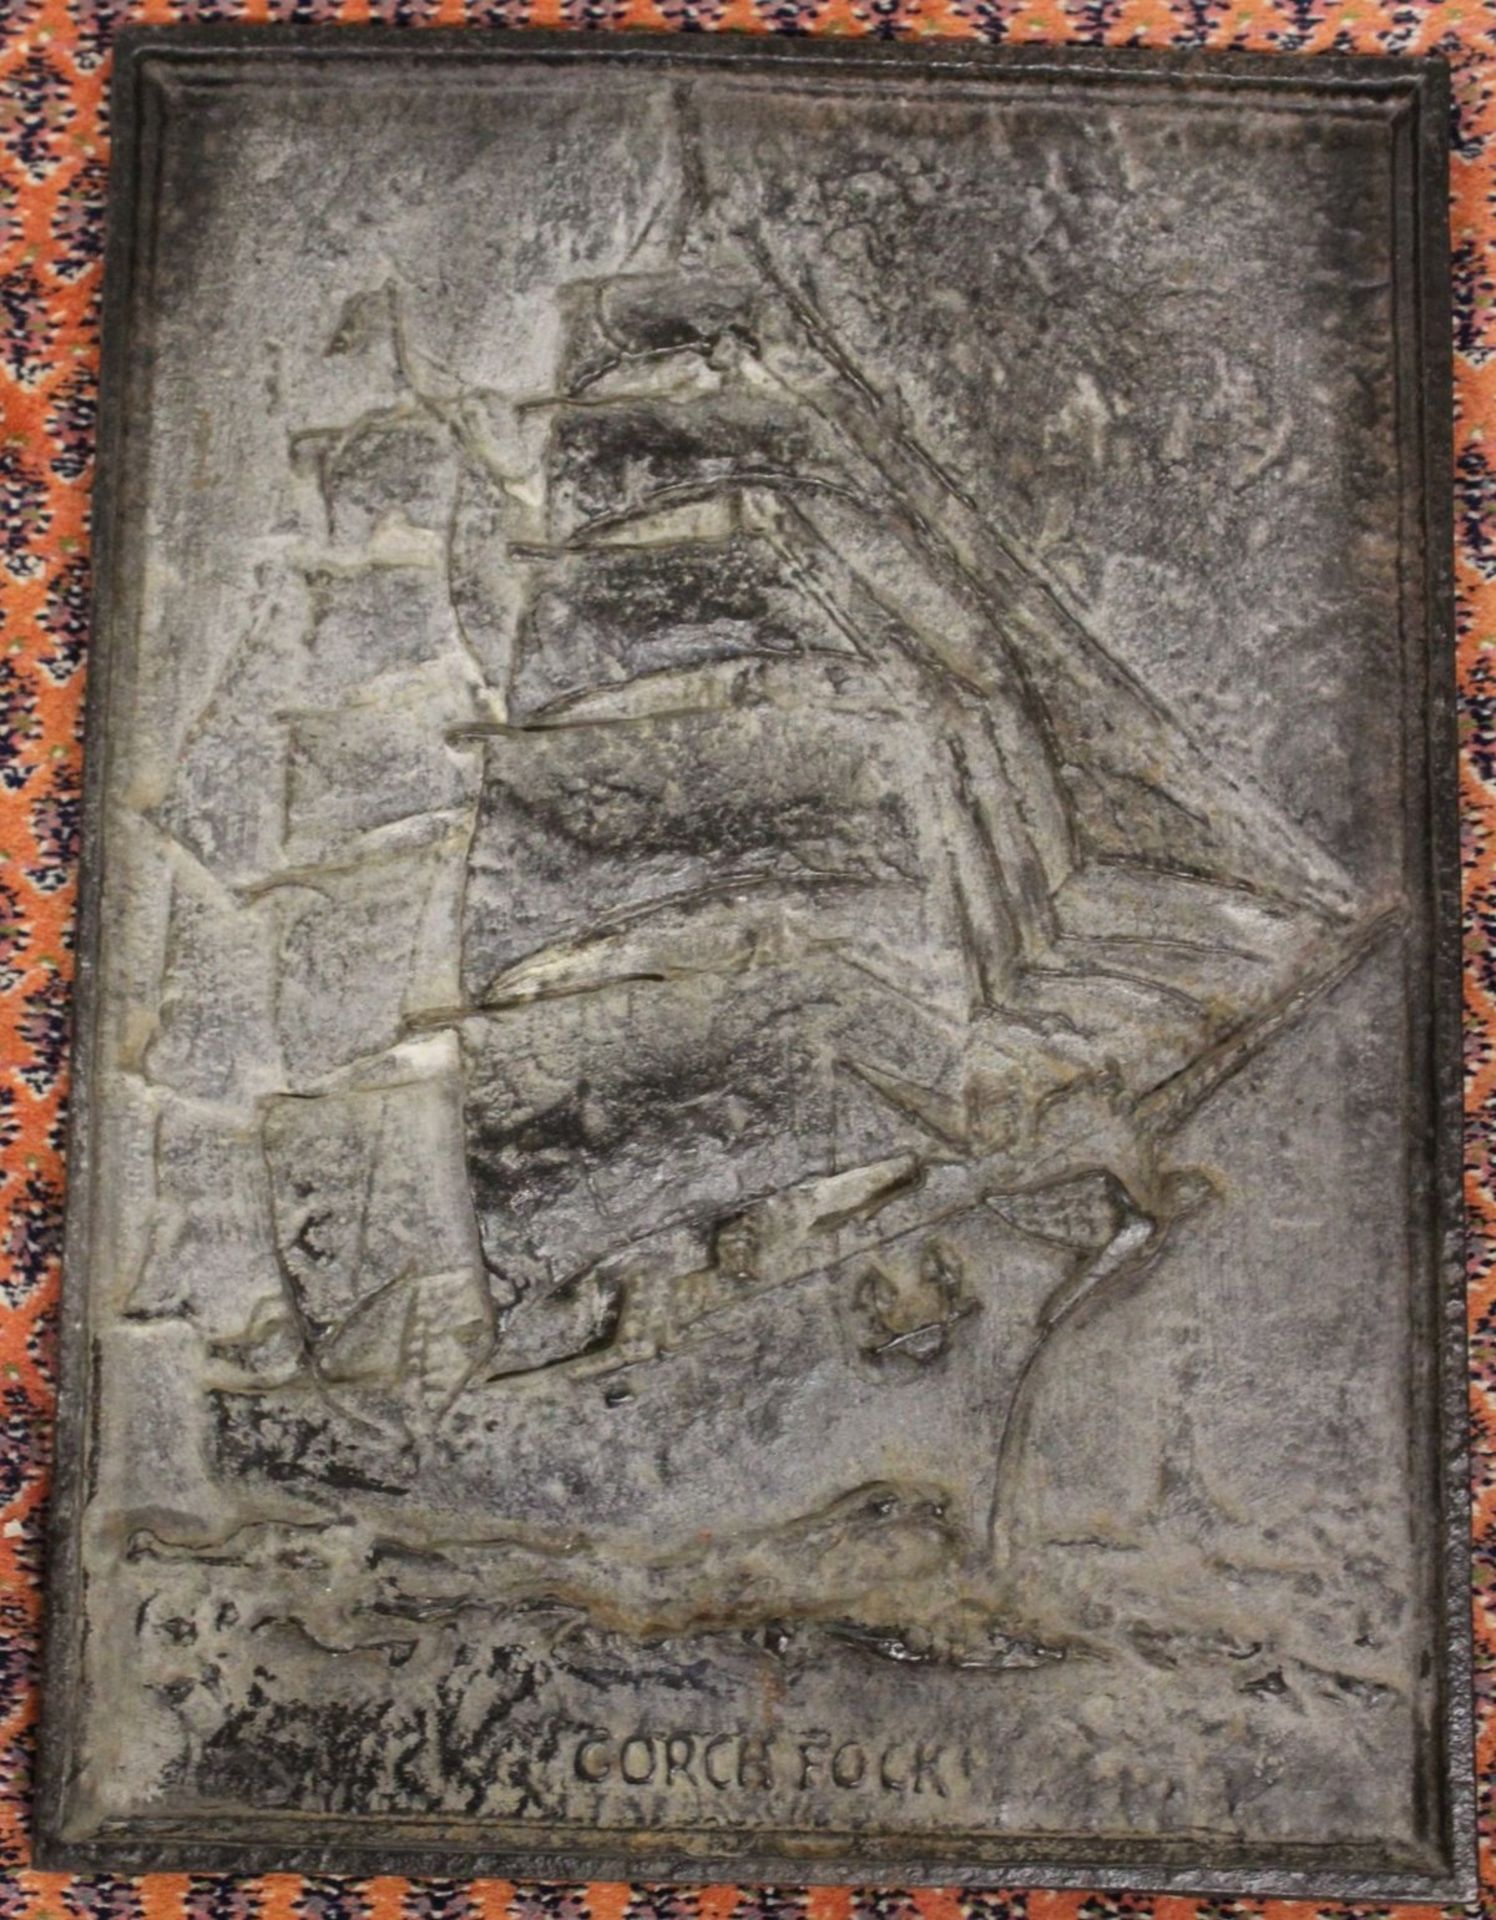 schwere Guss-Reliefplatte, Darstellung der Gorch-Fock, 57,5 x 43cm.